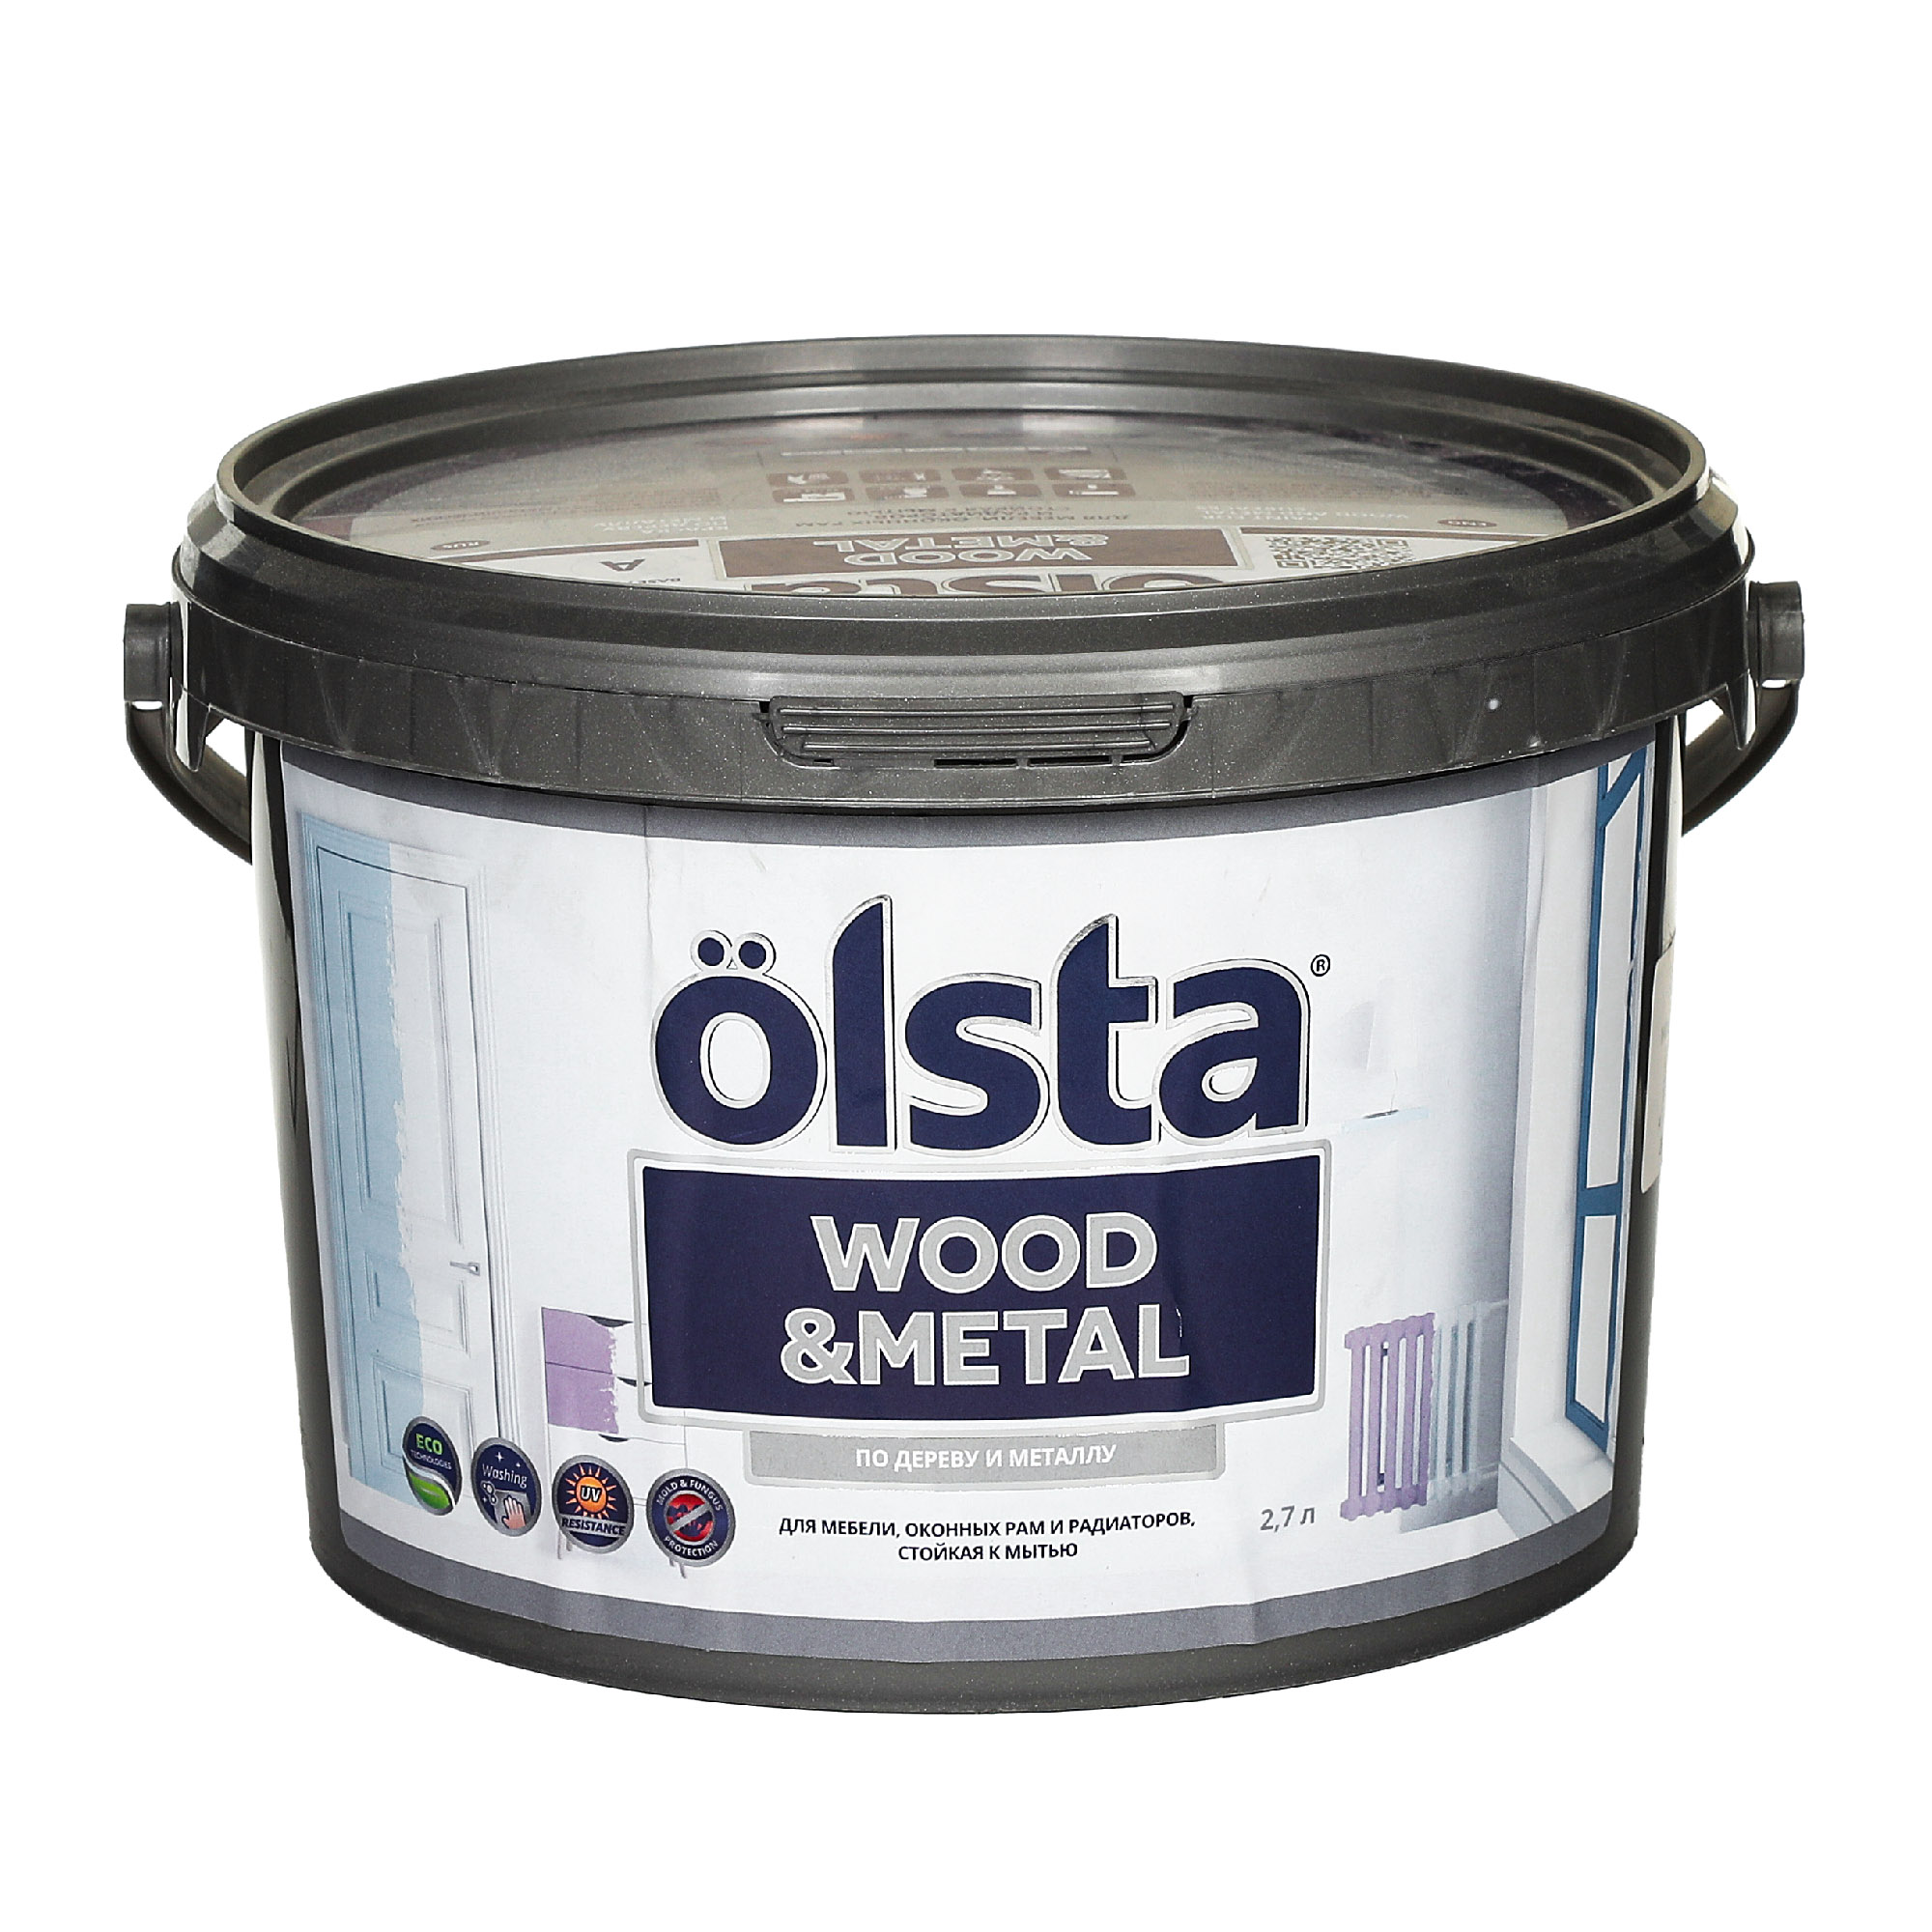 Где купить Краска Olsta Wood&Metal База С 0,9 л Olsta 